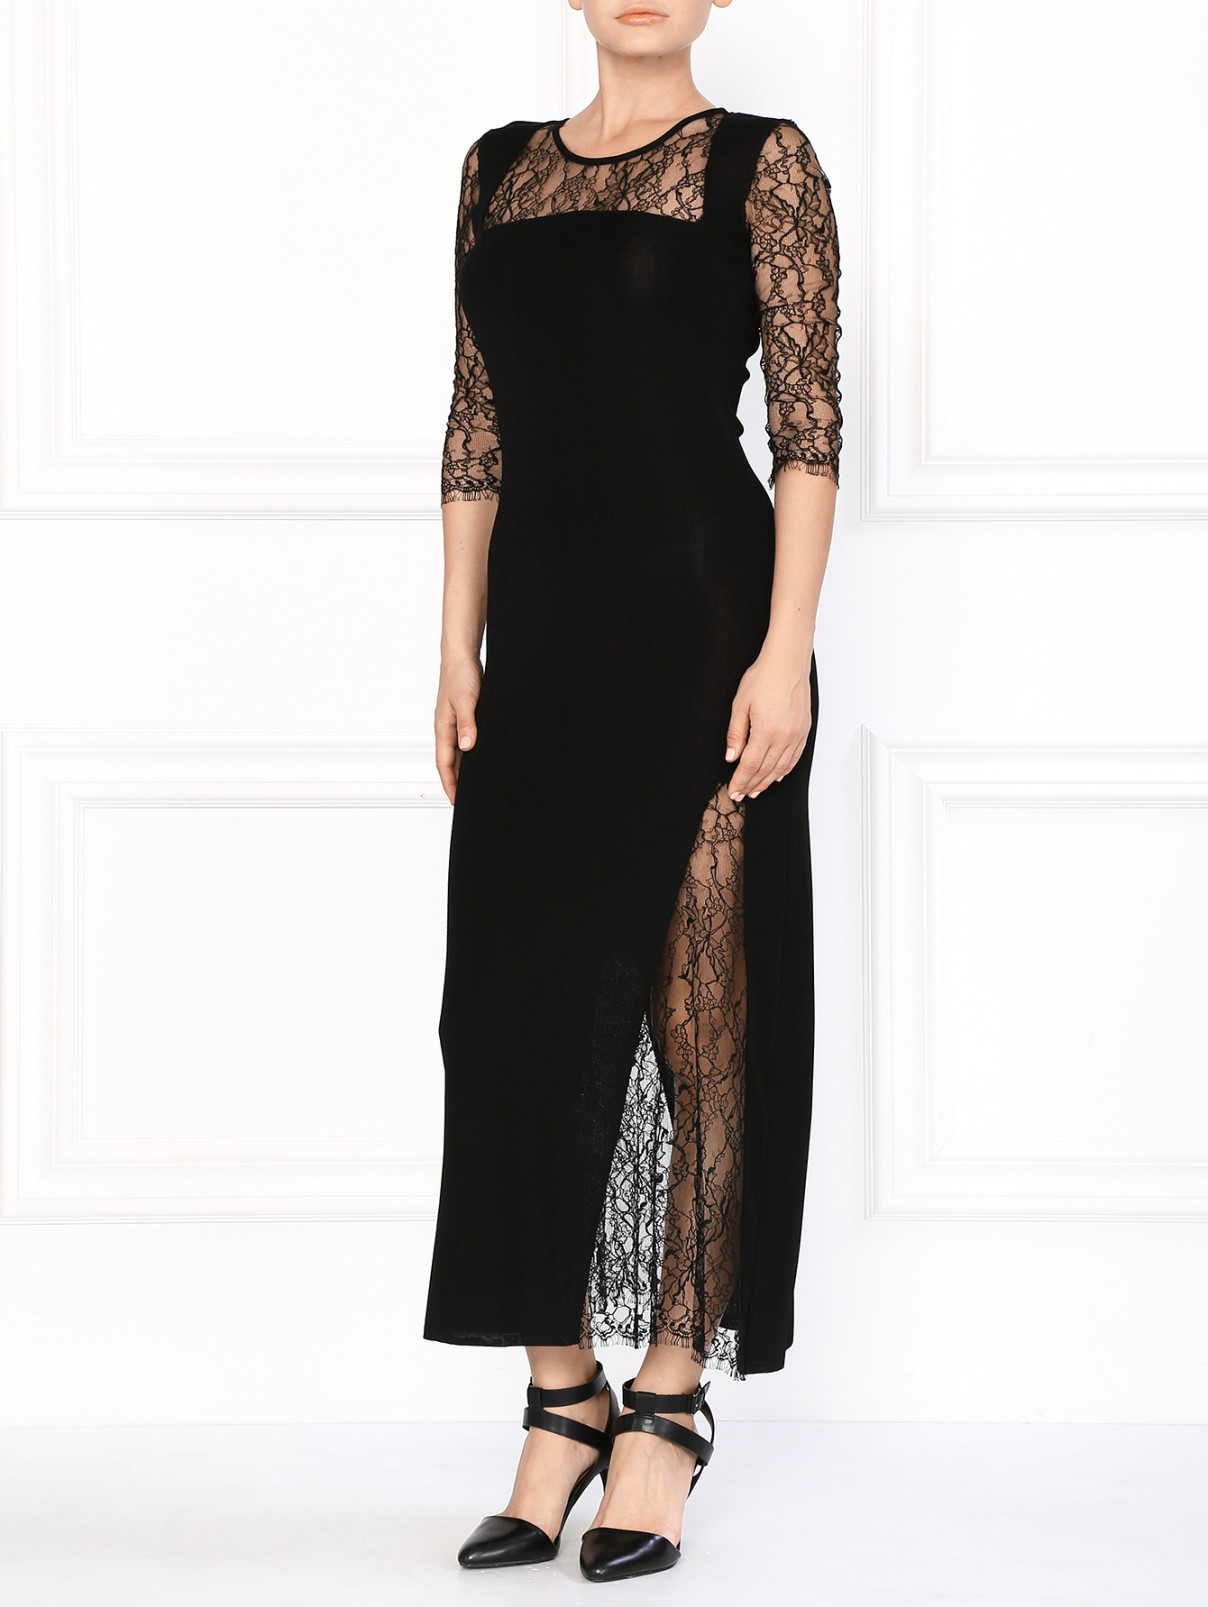 Трикотажное платье-макси с кружевными рукавами 3/4 Lil pour l'Autre  –  Модель Общий вид  – Цвет:  Черный